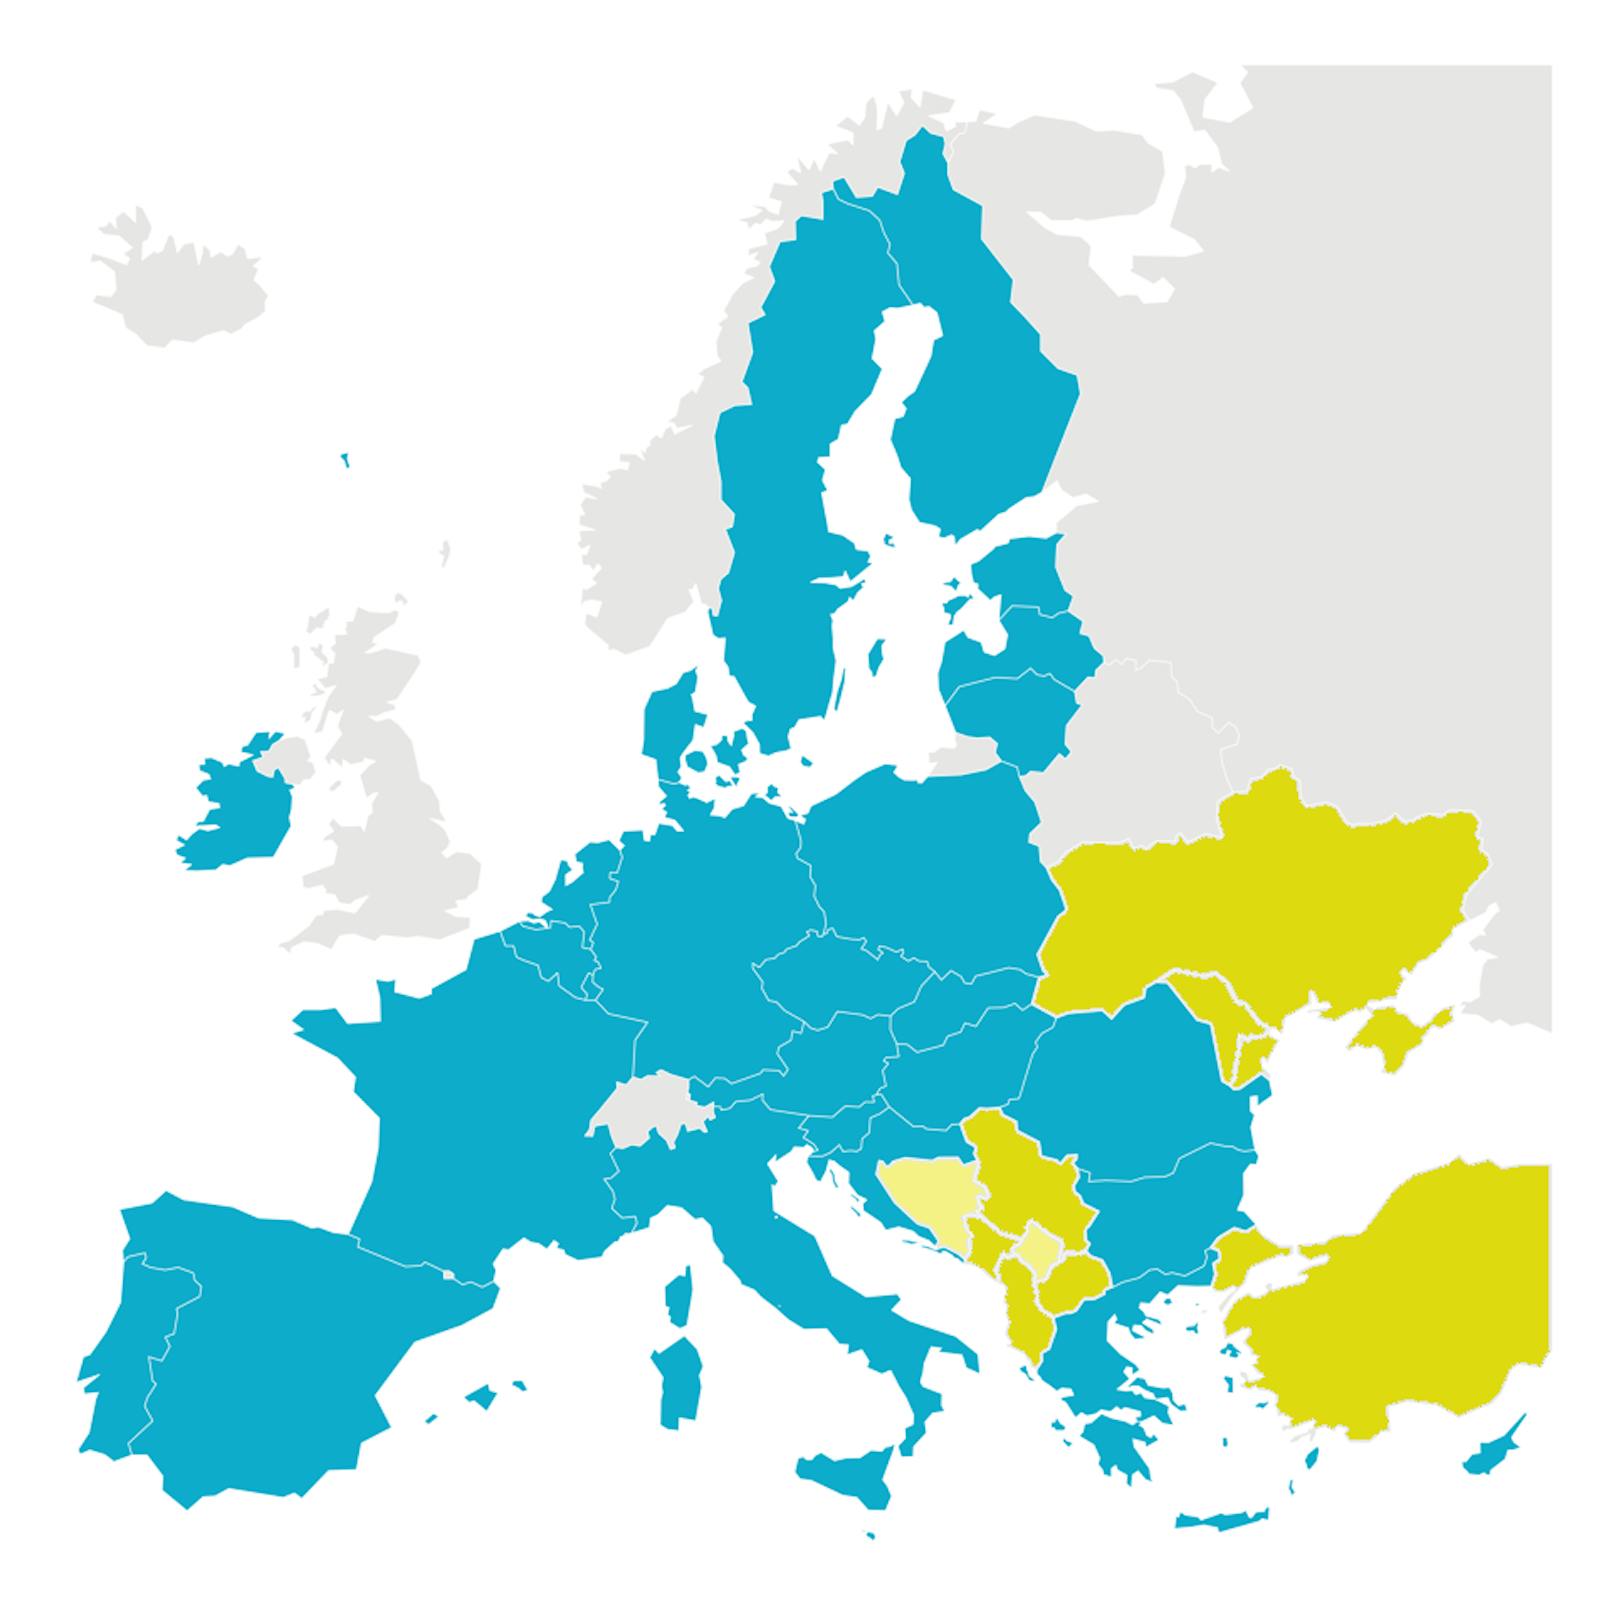 Die aktuellen EU-Mitgliedsstaaten in hellblau, die Beitrittskandidaten in gelb, potentielle Beitrittskandidaten in hellerem gelb.